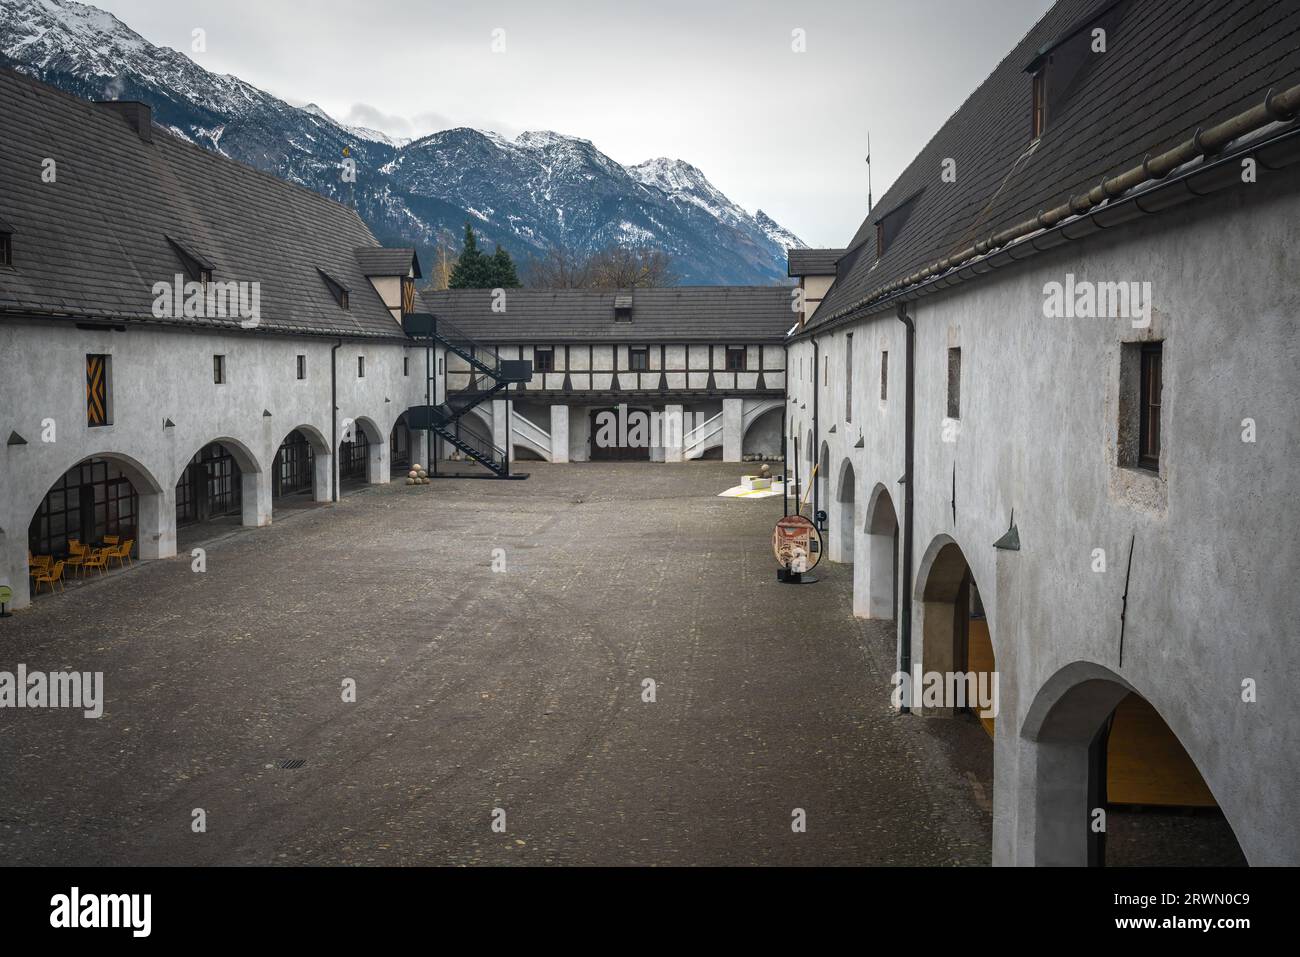 Zeughaus Museum Courtyard - Arsenal - Innsbruck, Austria Stock Photo